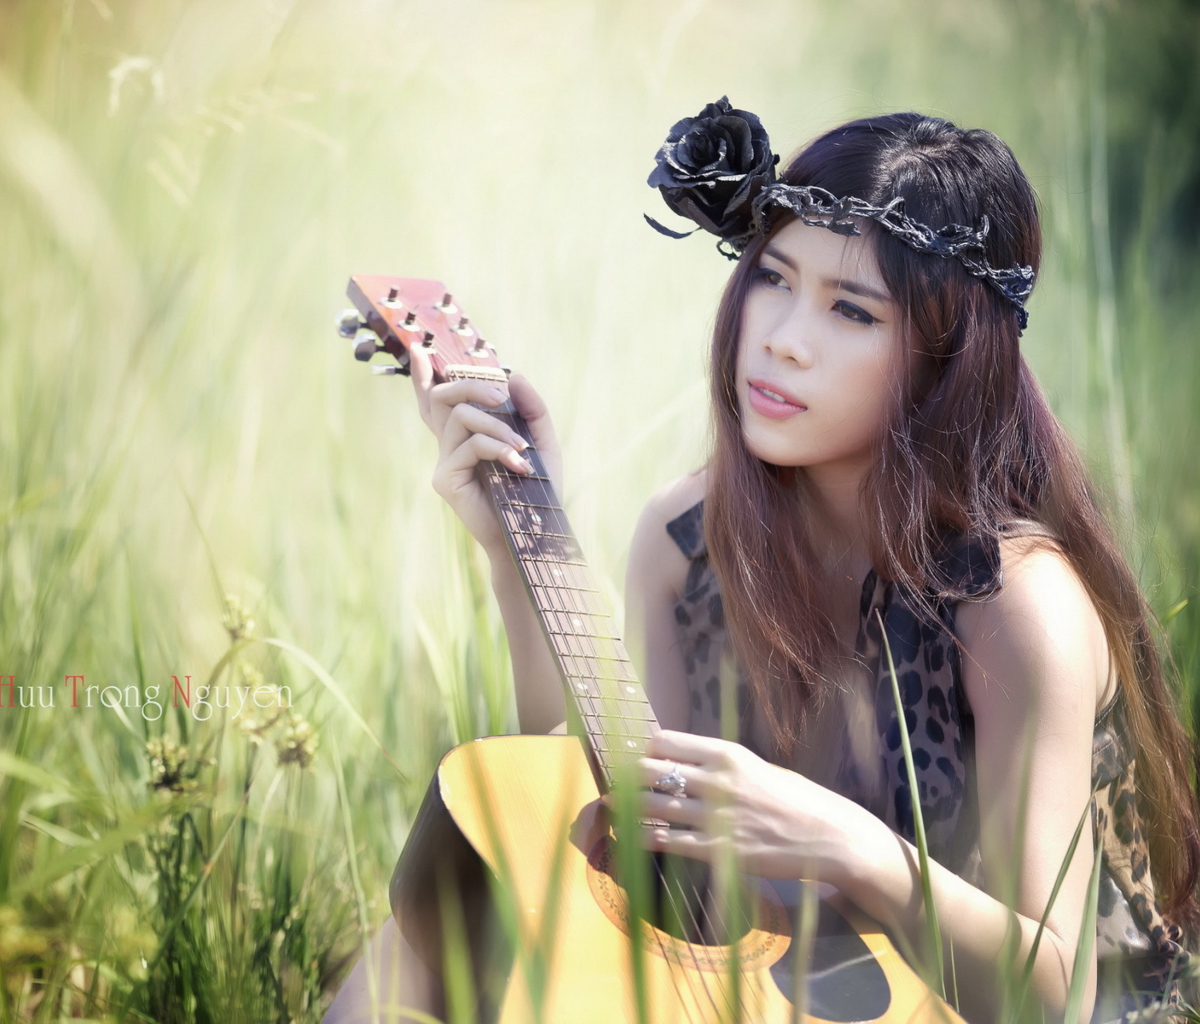 Pretty Girl In Grass Playing Guitar screenshot #1 1200x1024